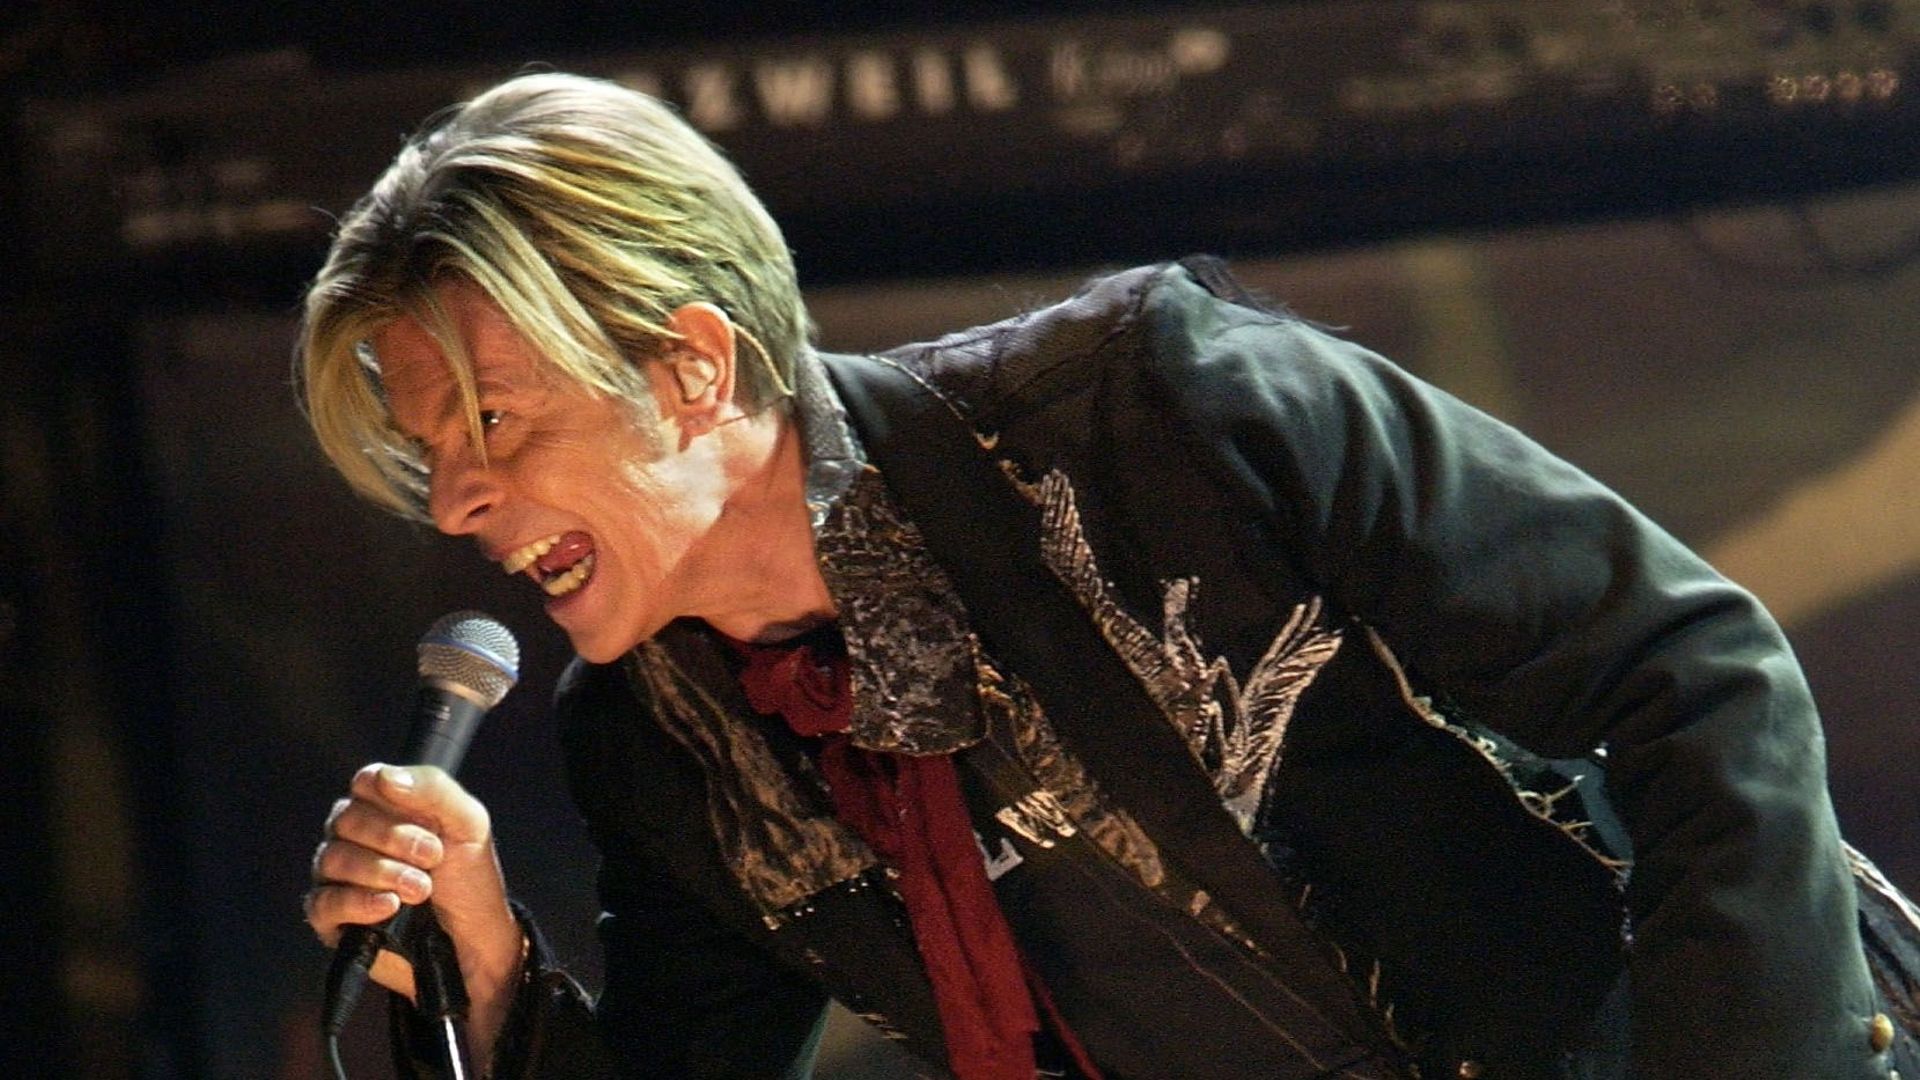 David Bowie sur scène à Bercy en 2003